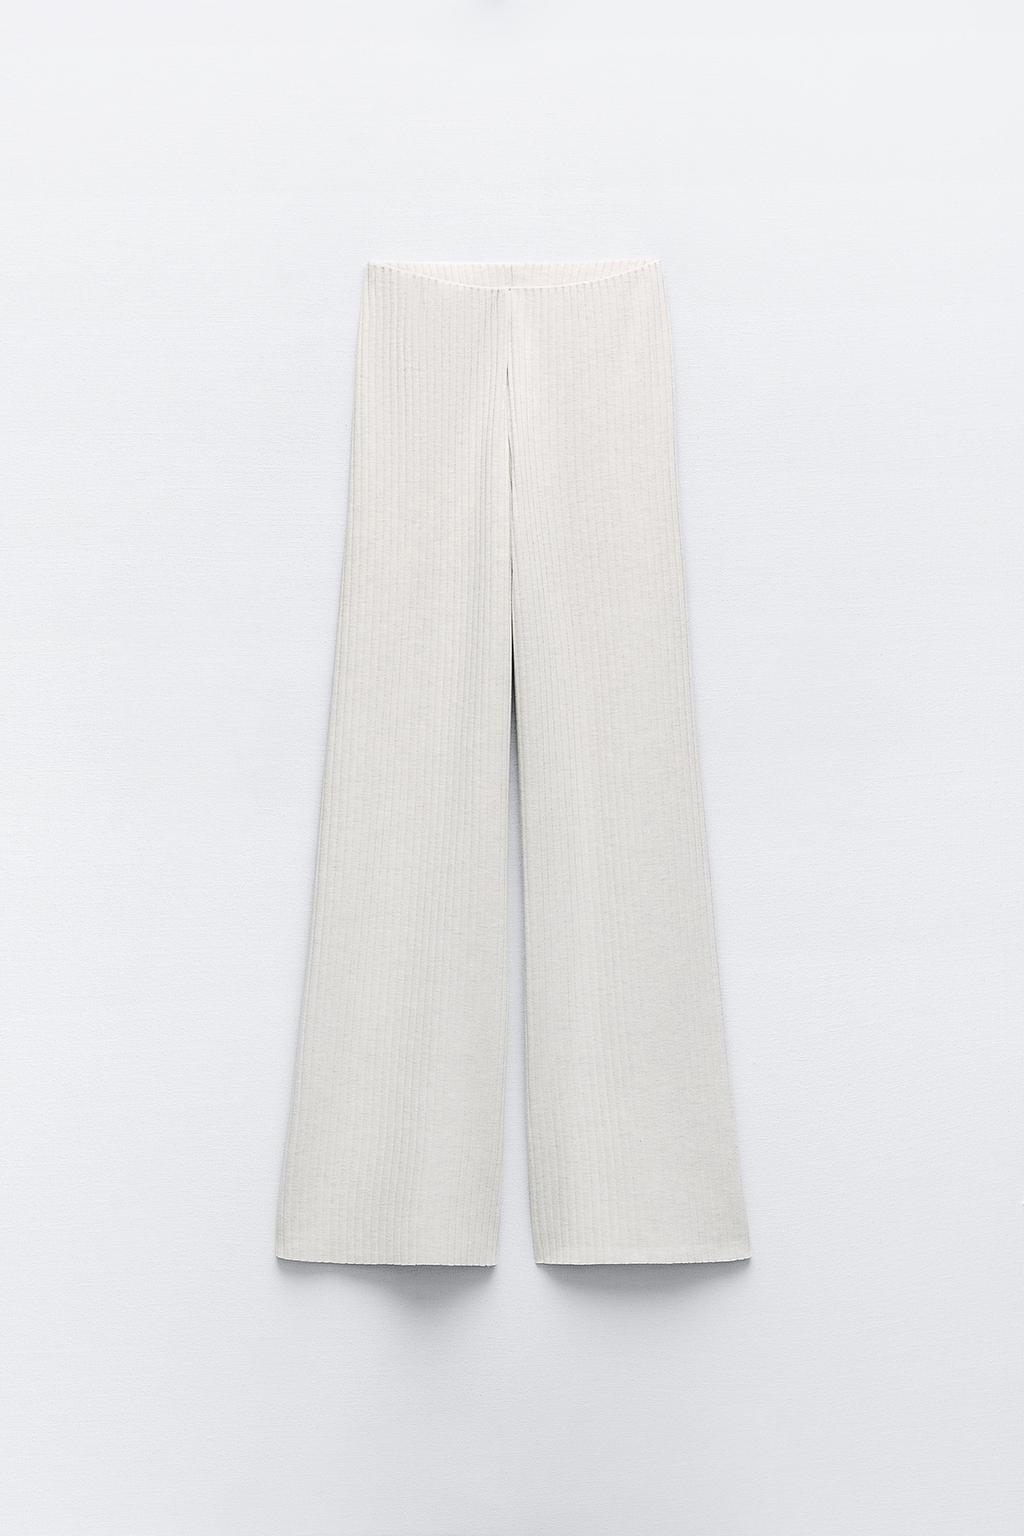 Широкие брюки в ребрику ZARA, бежевый брюки женские прямые с завышенной талией базовые цветные непрозрачные драпированные повседневные белые брюки с широкими штанинами подхо